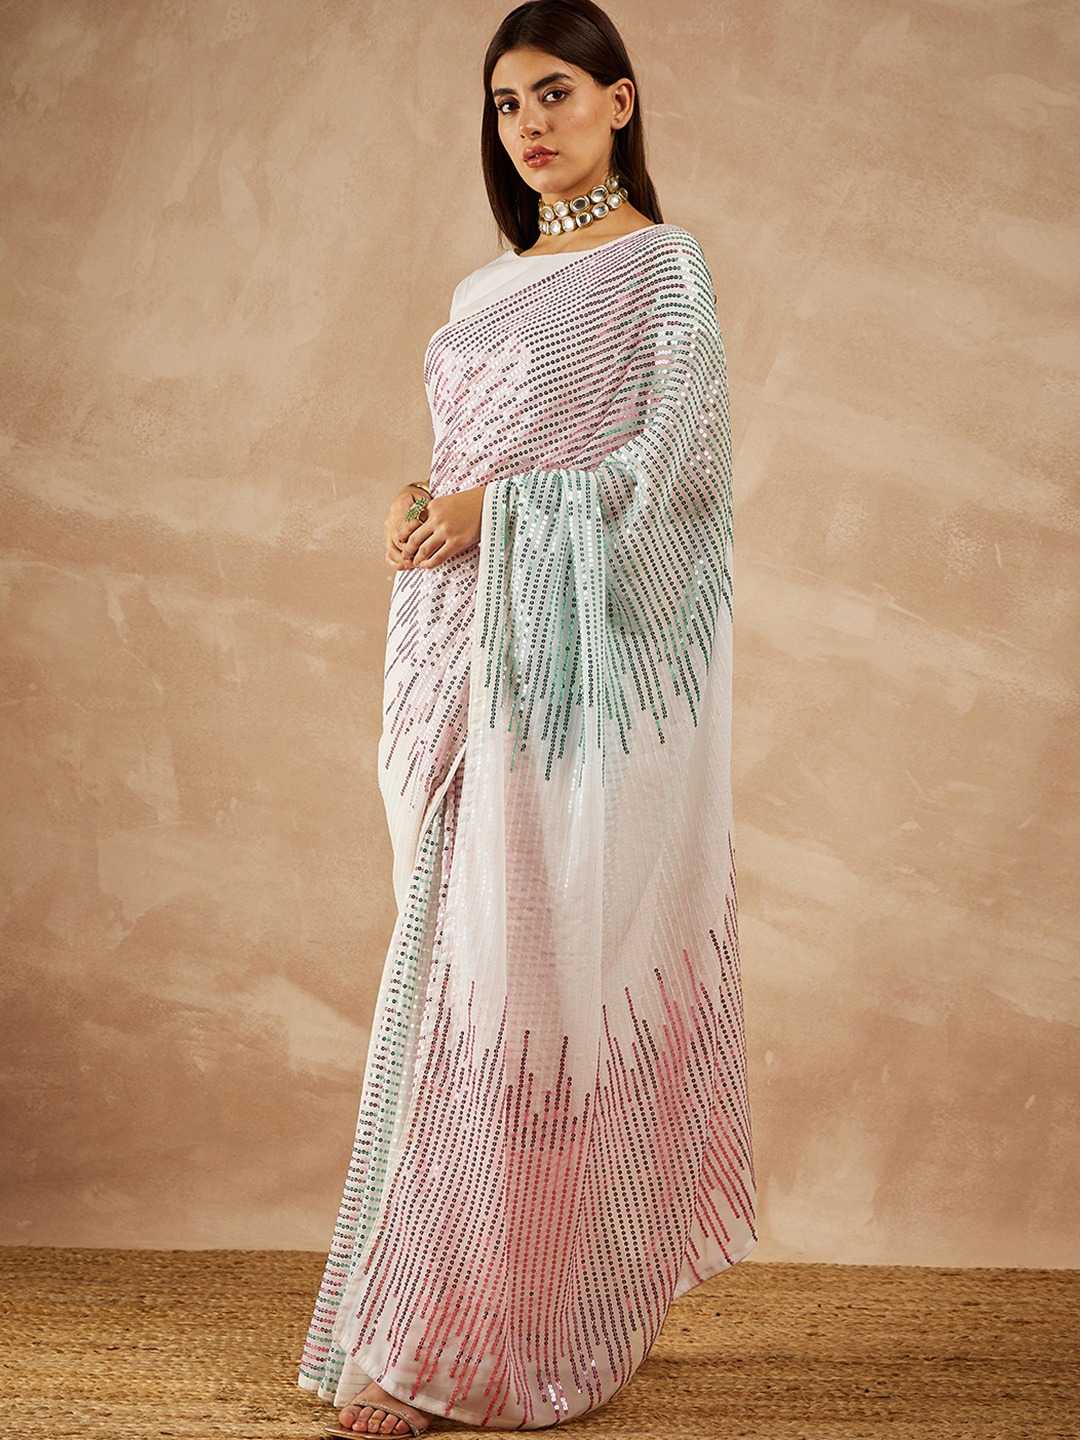 mahotsav roozal vol 5 festive wear beautiful georgette sarees